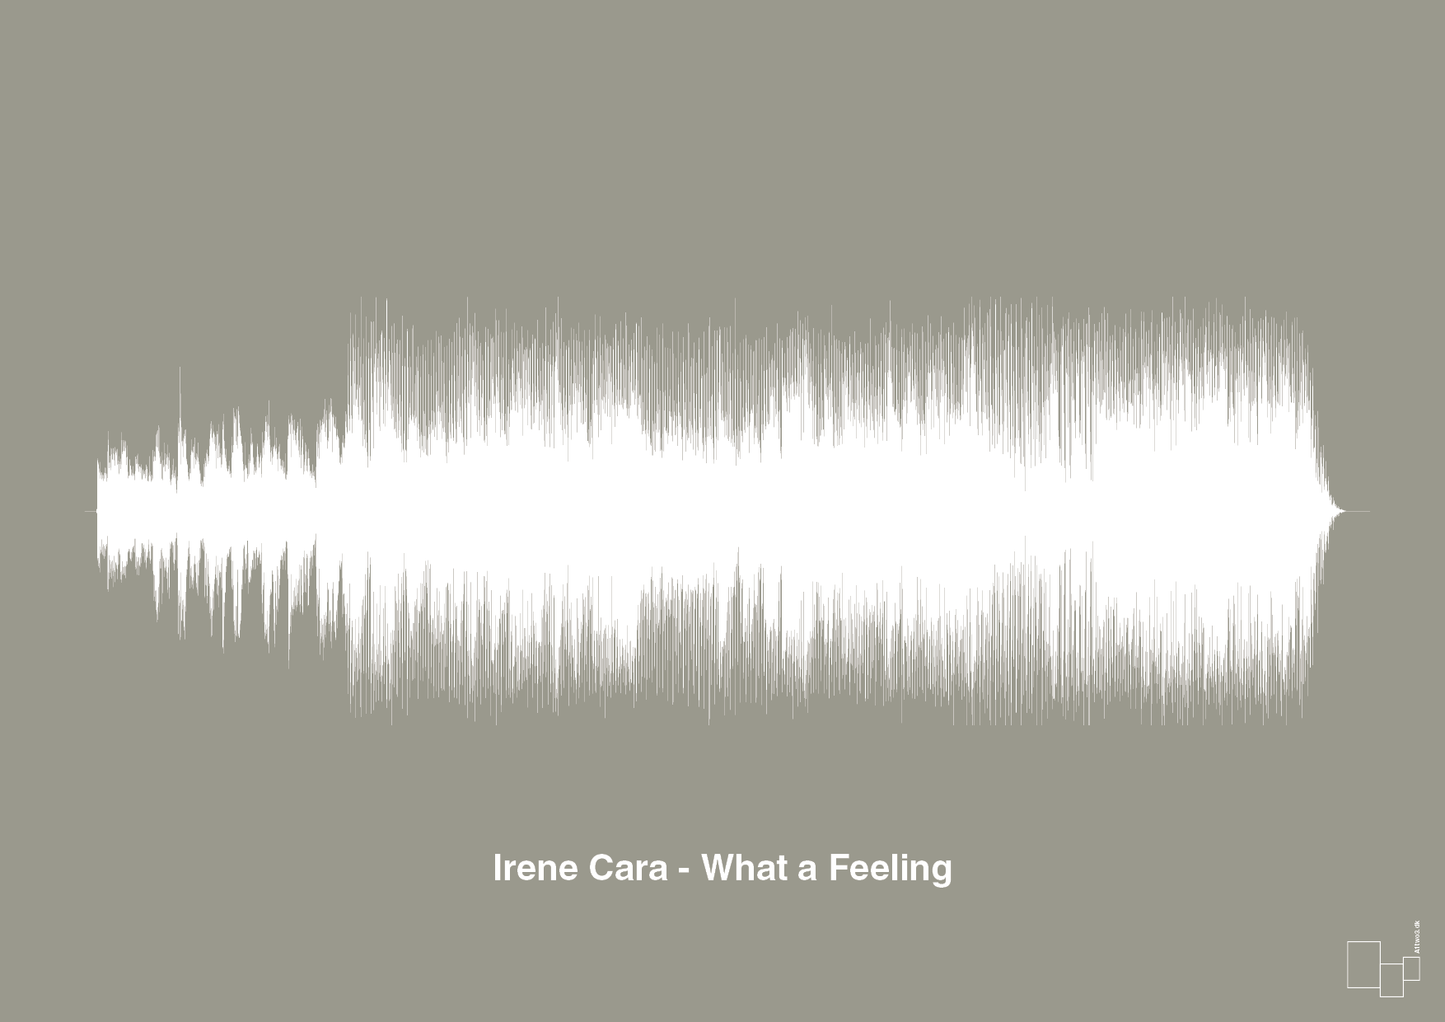 irene cara - what a feeling - Plakat med Musik i Battleship Gray